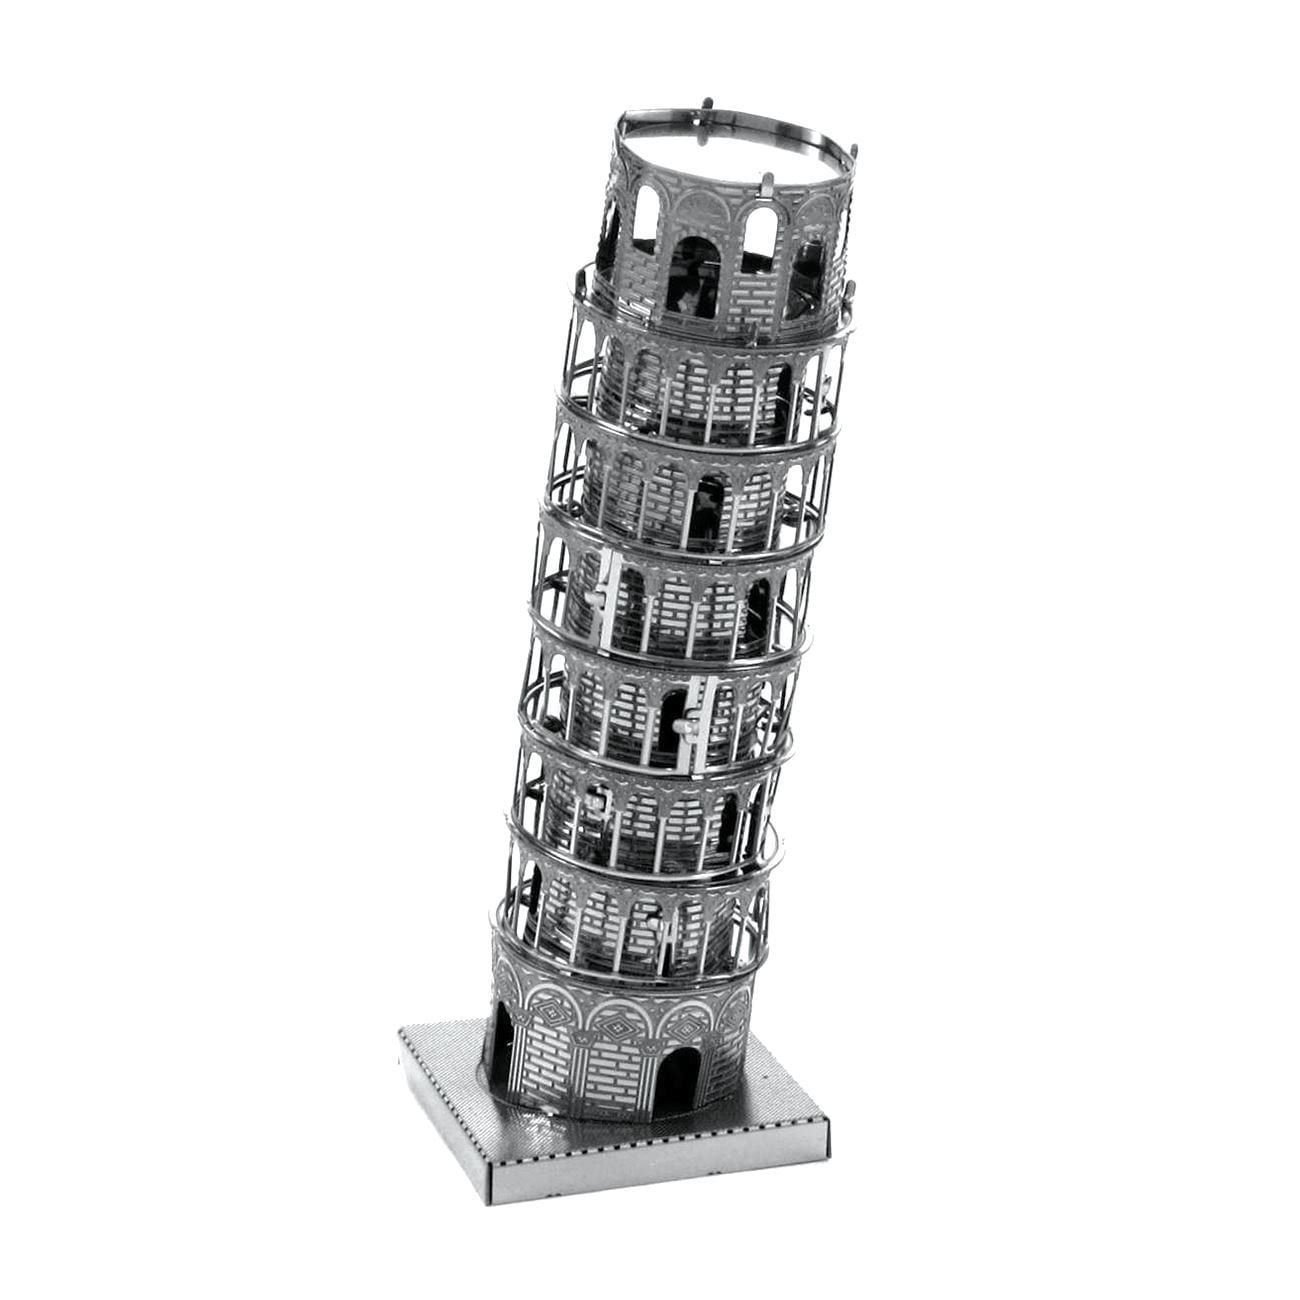  Mô Hình Kim Loại Lắp Ráp 3D Metal Mosaic Tháp Nghiêng Pisa – MP693 